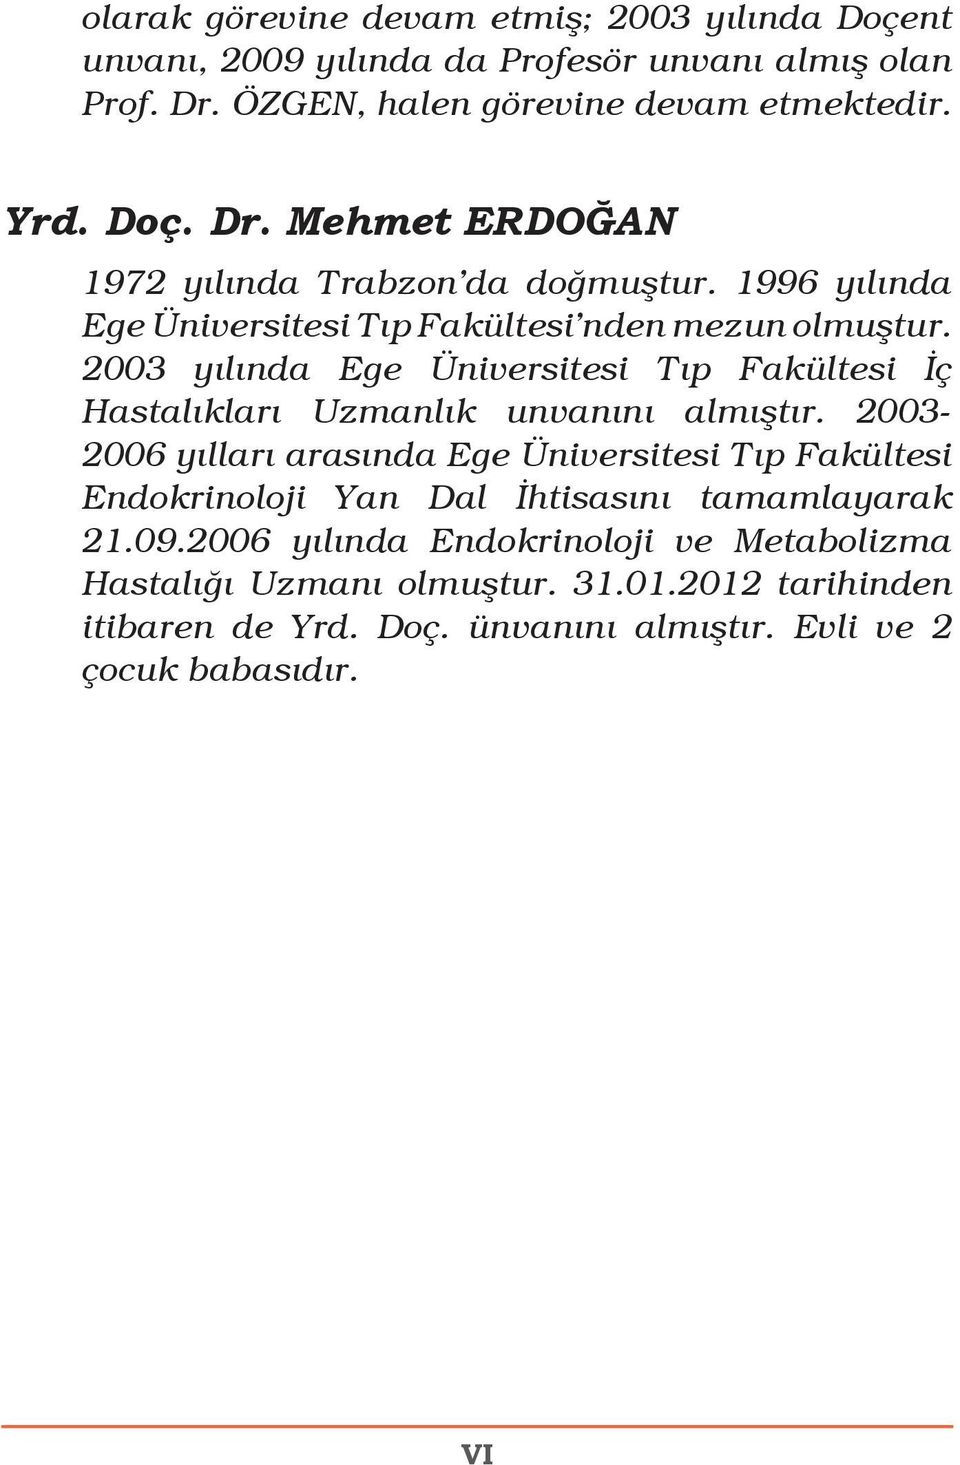 2003-2006 yılları arasında Ege Üniversitesi Tıp Fakültesi Endokrinoloji Yan Dal İhtisasını tamamlayarak 21.09.